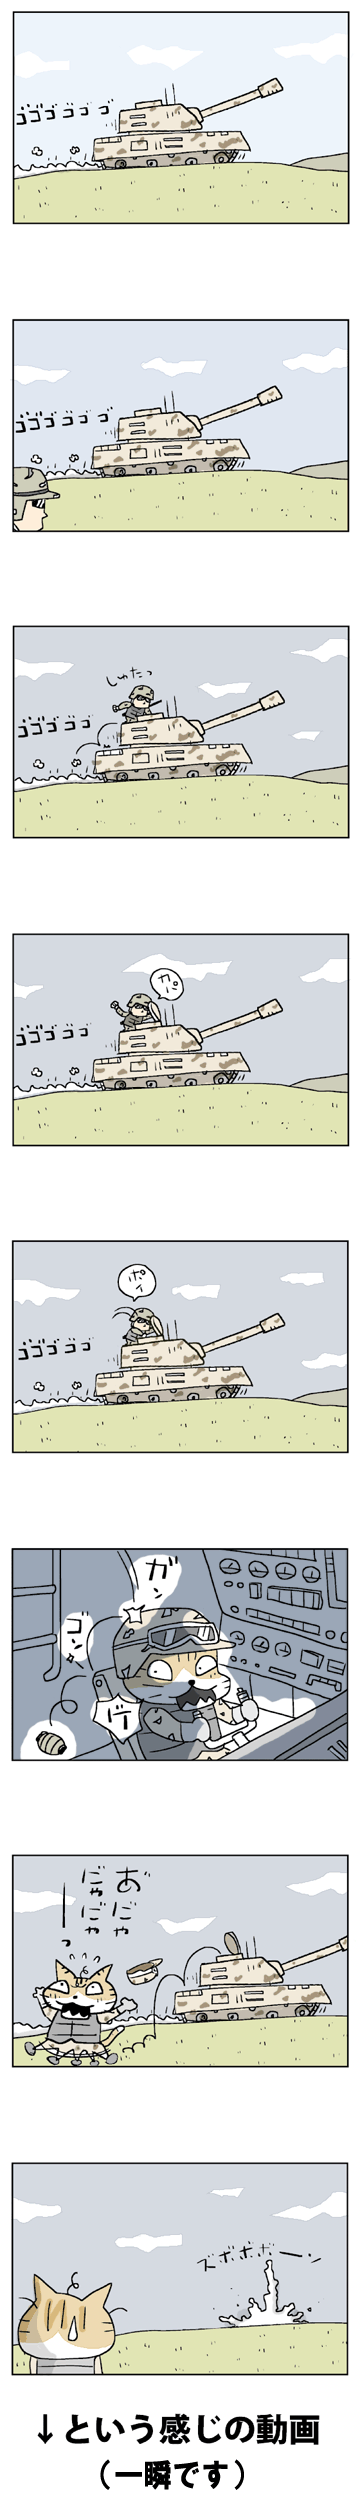 C12-7-12 猫戦車隊員のコピー